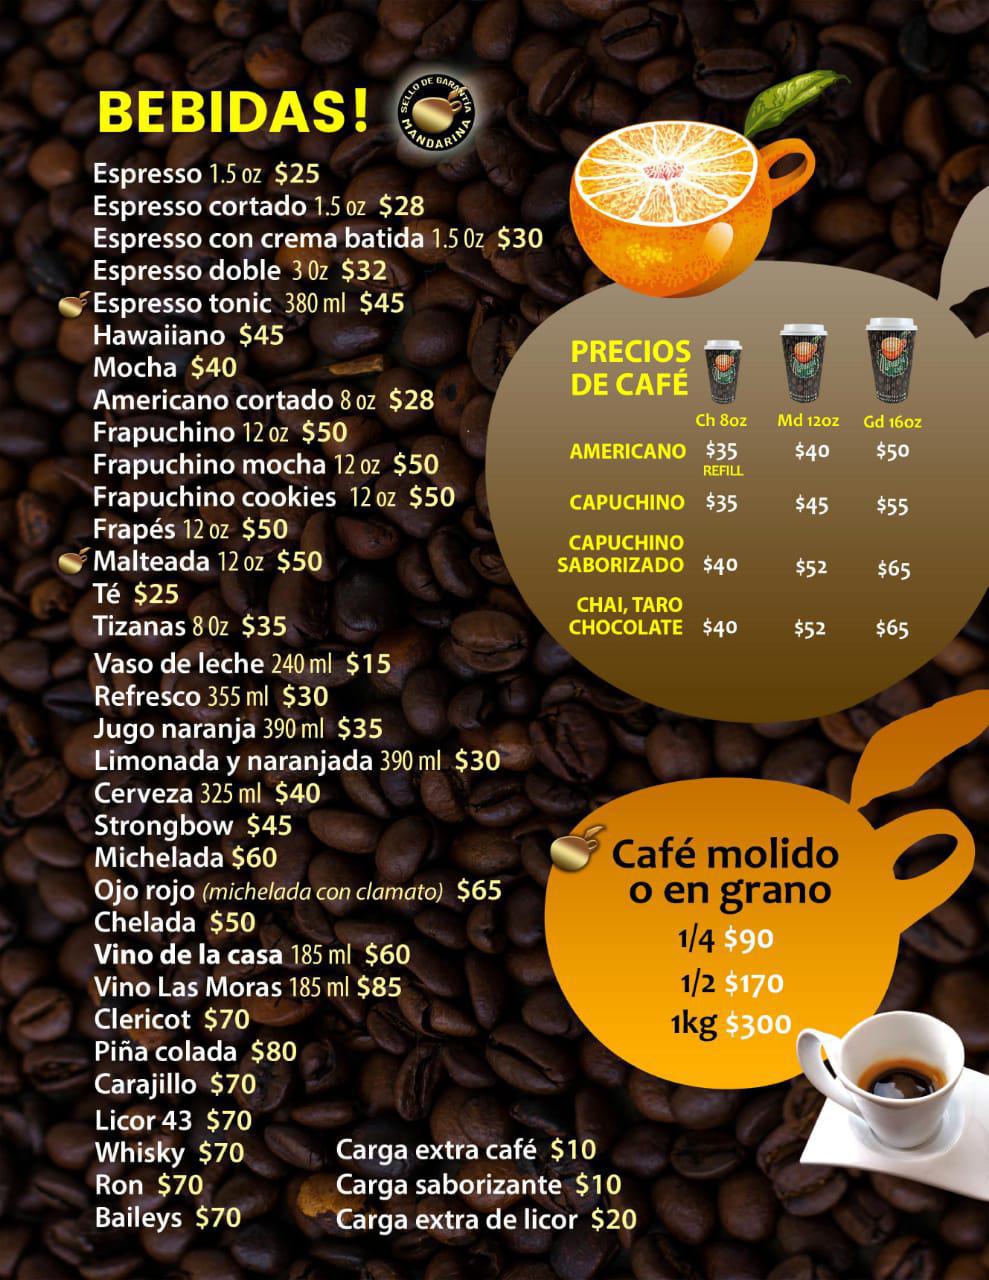 Mandarina Café - Tuxpan